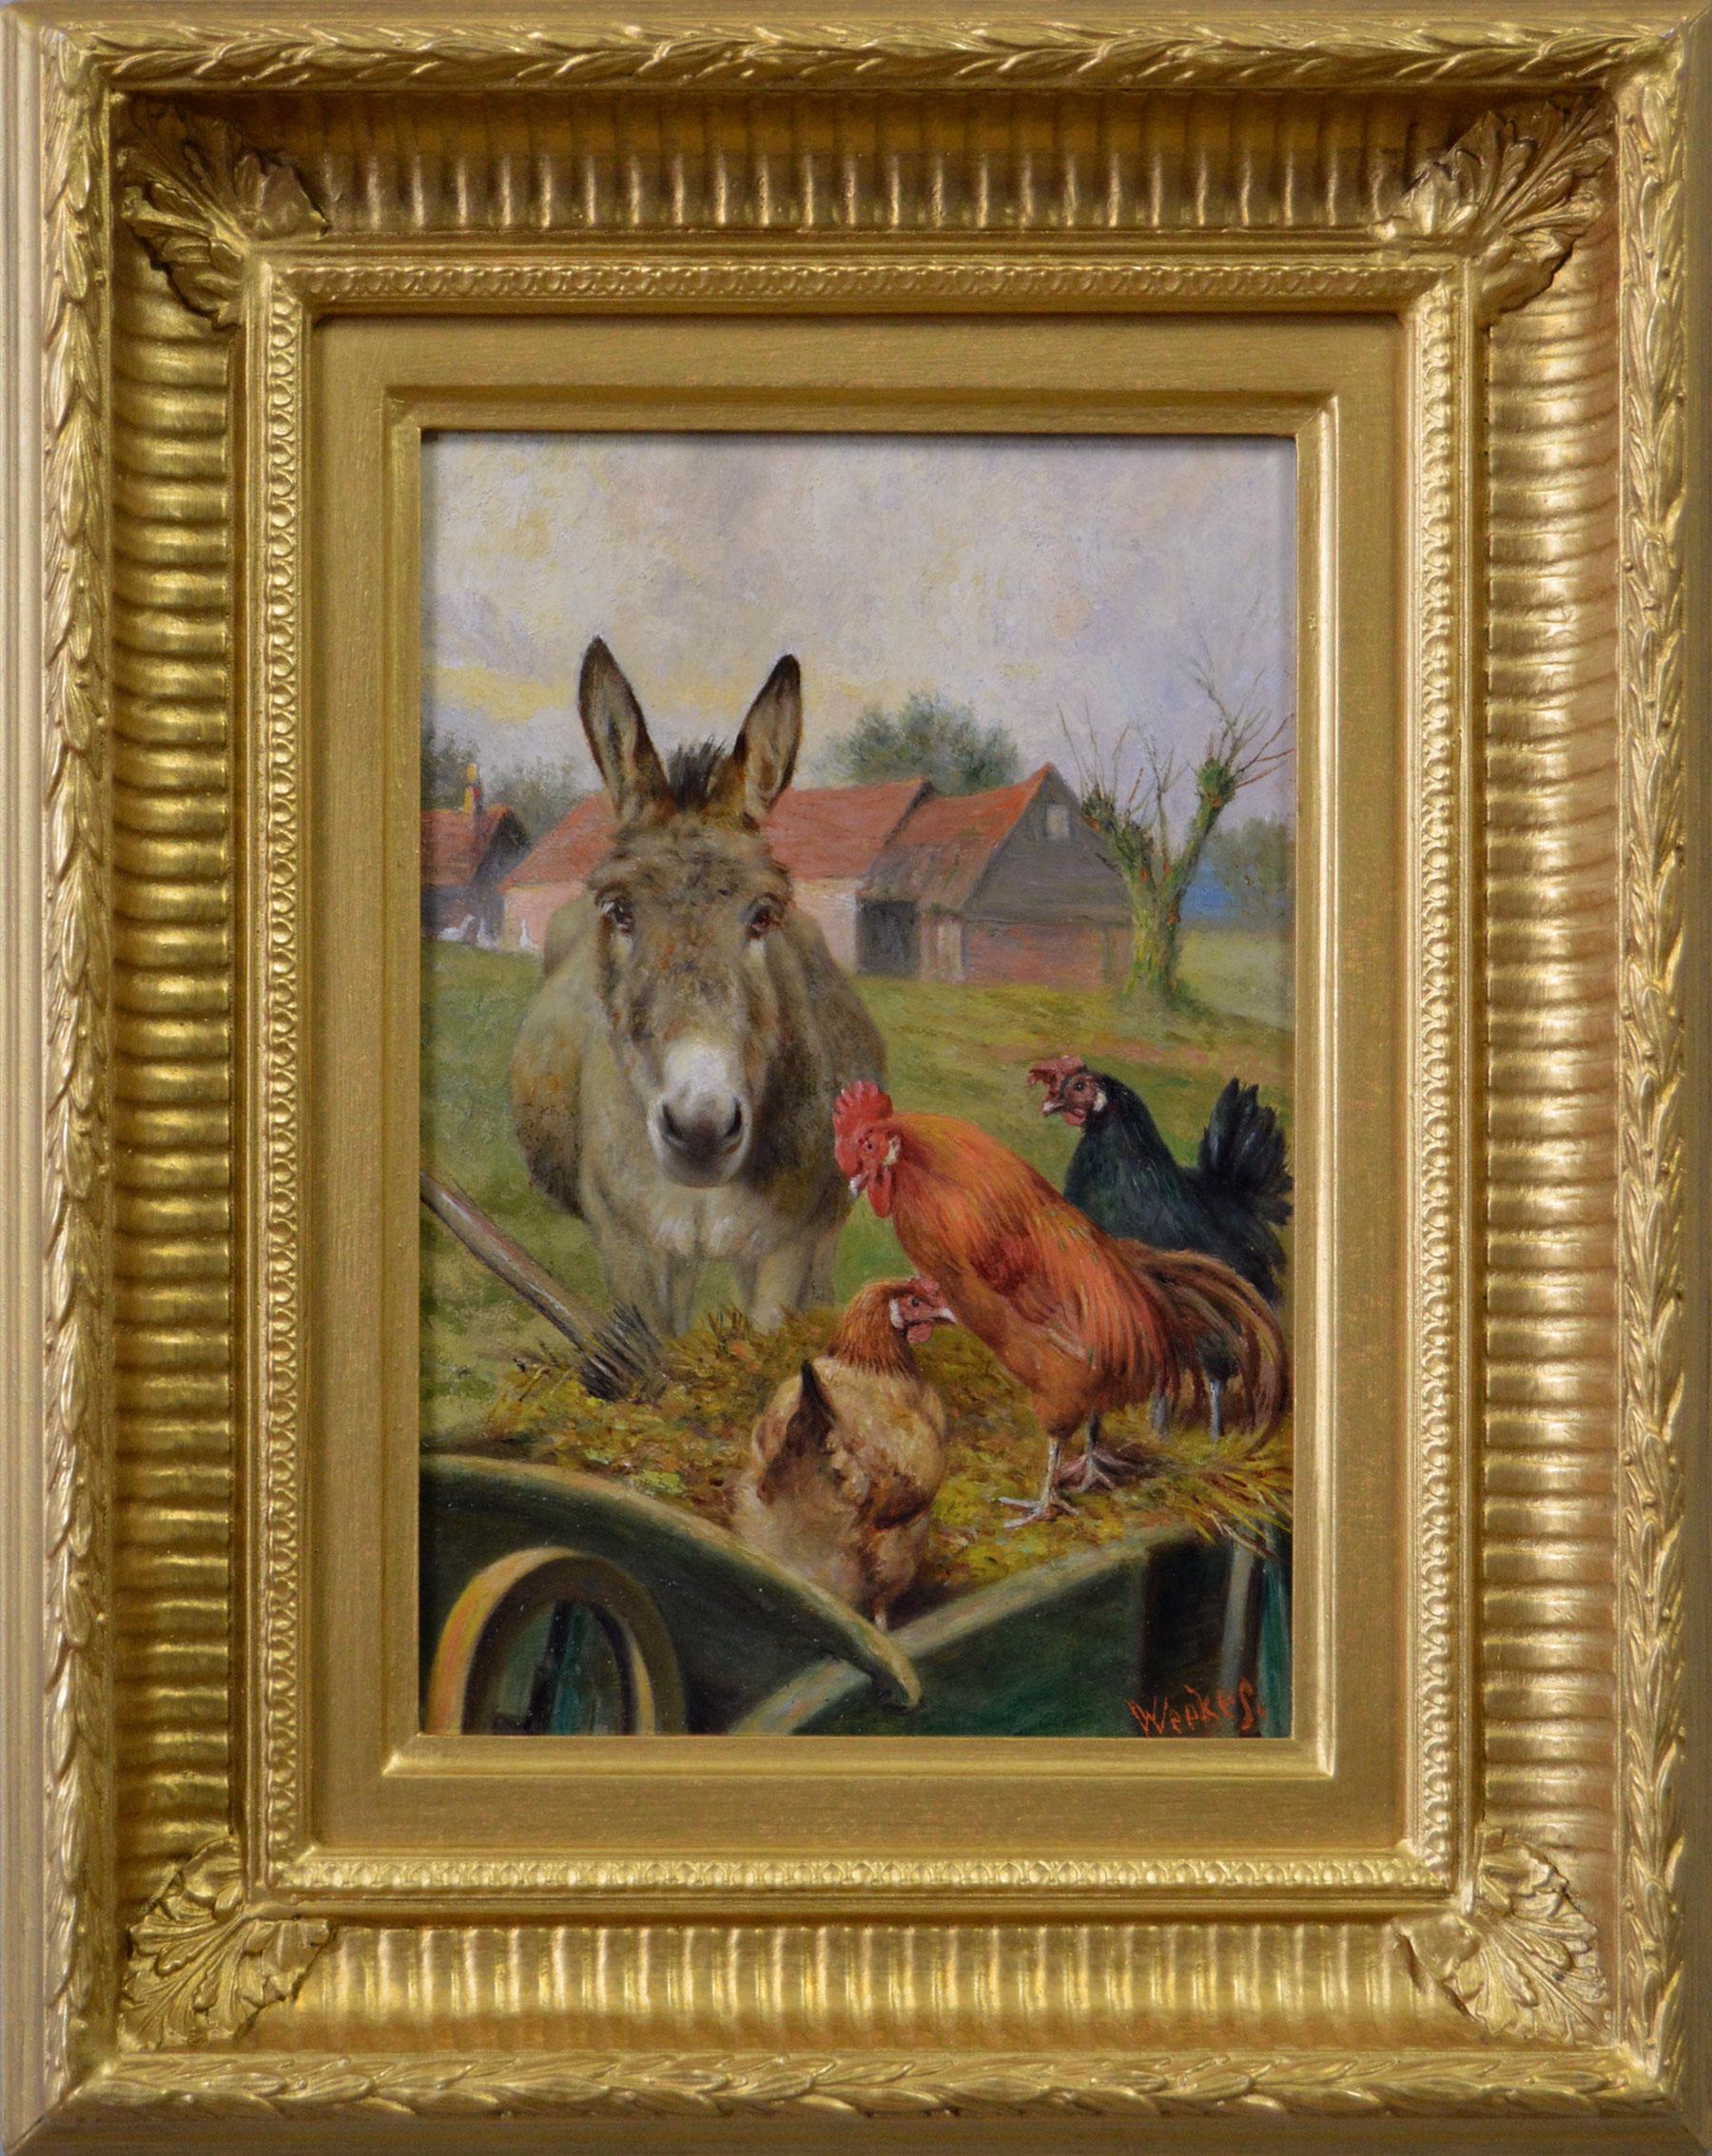 Animal Painting Herbert William Weekes - Peinture à l'huile de genre du 19e siècle représentant un âne avec un coq et des hens